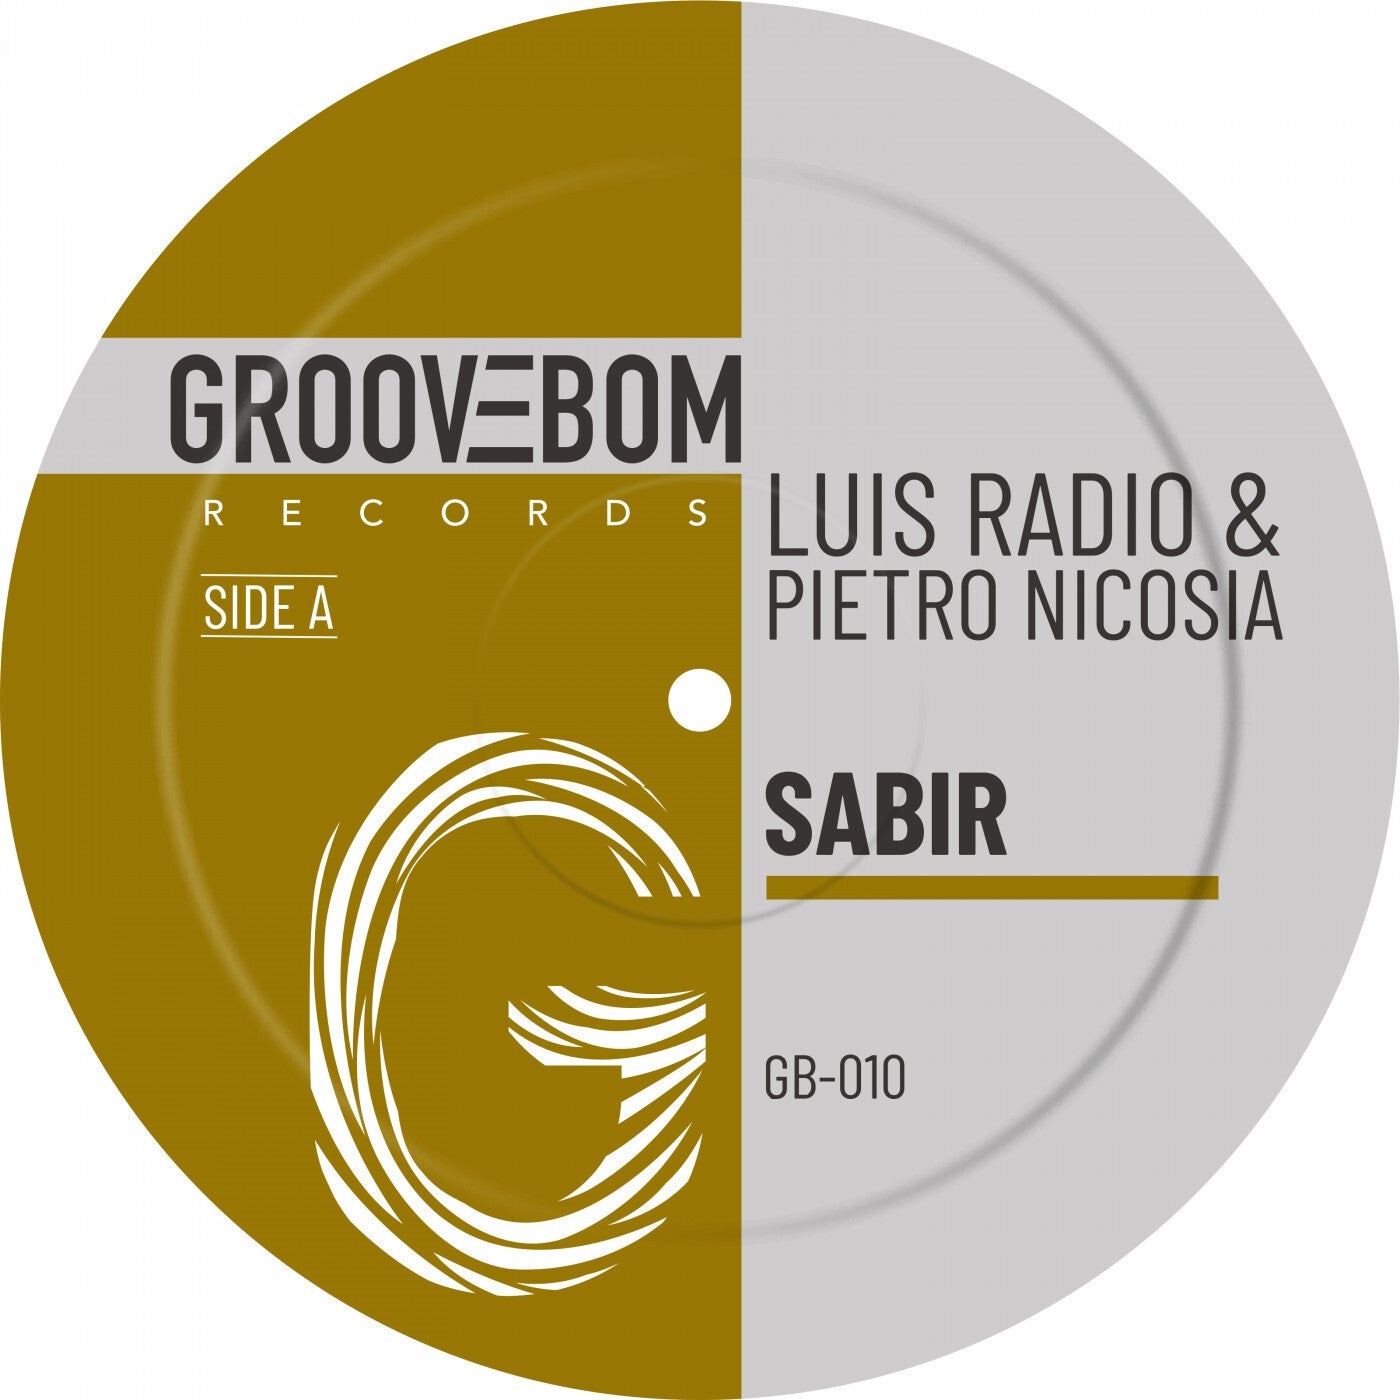 Luis Radio, Pietro Nicosia - Sabir [GB010]